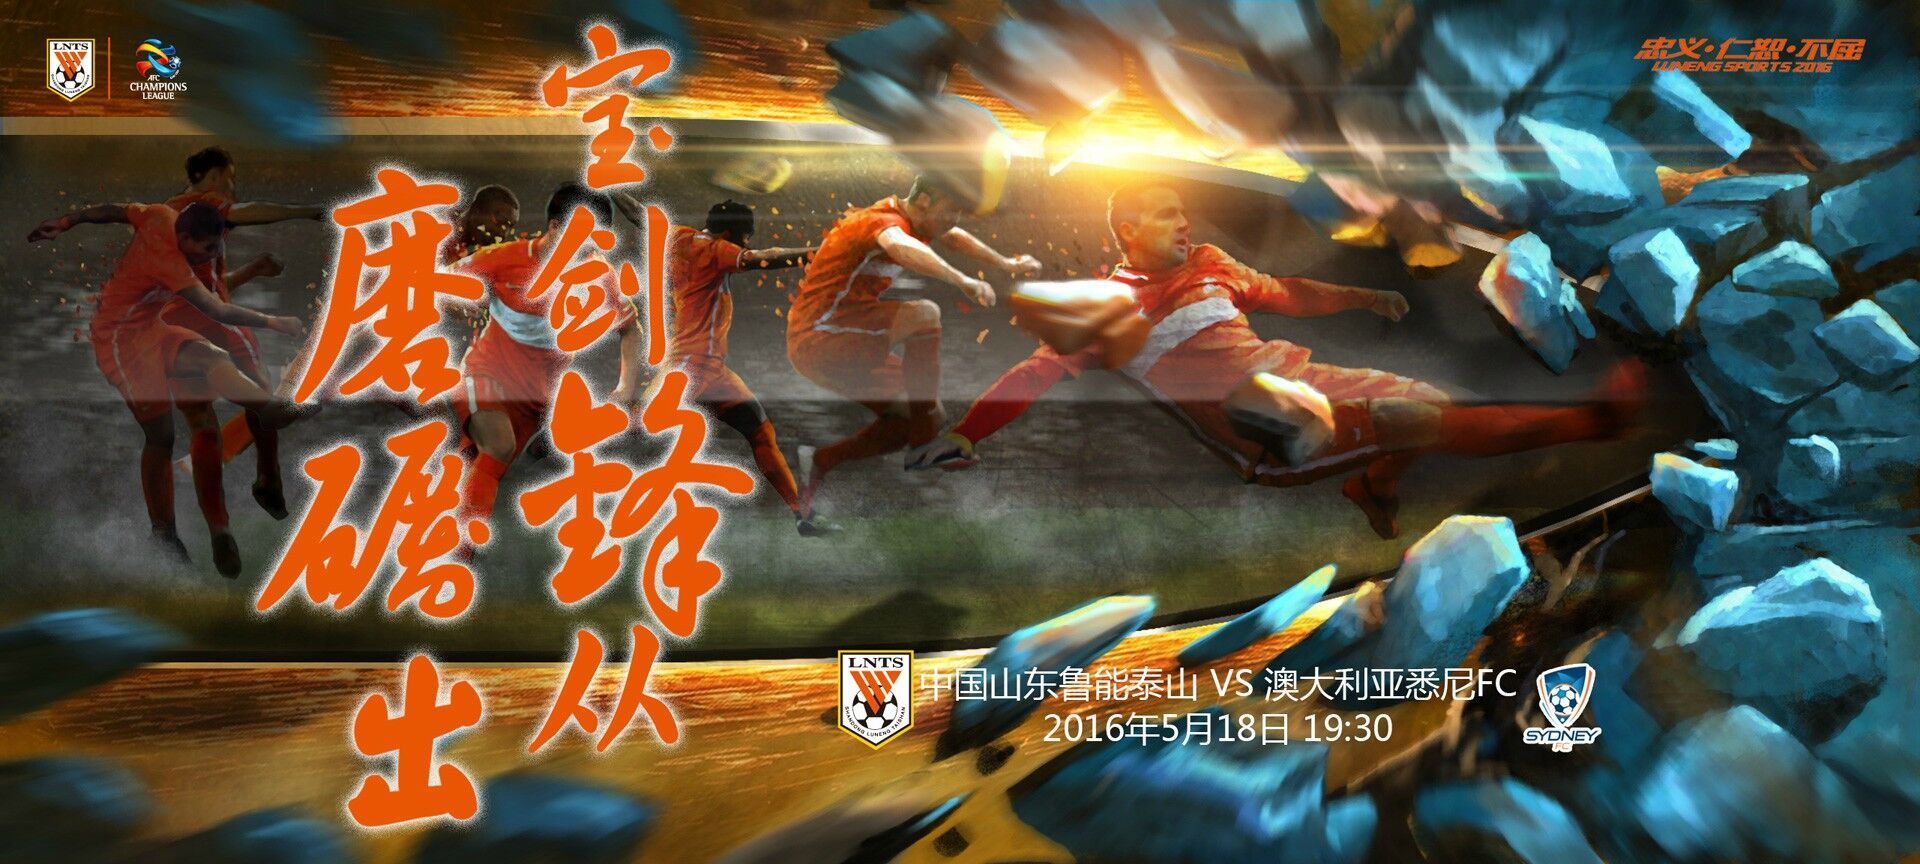 亚冠视频直播 山东鲁能vs悉尼FC首发阵容 比分